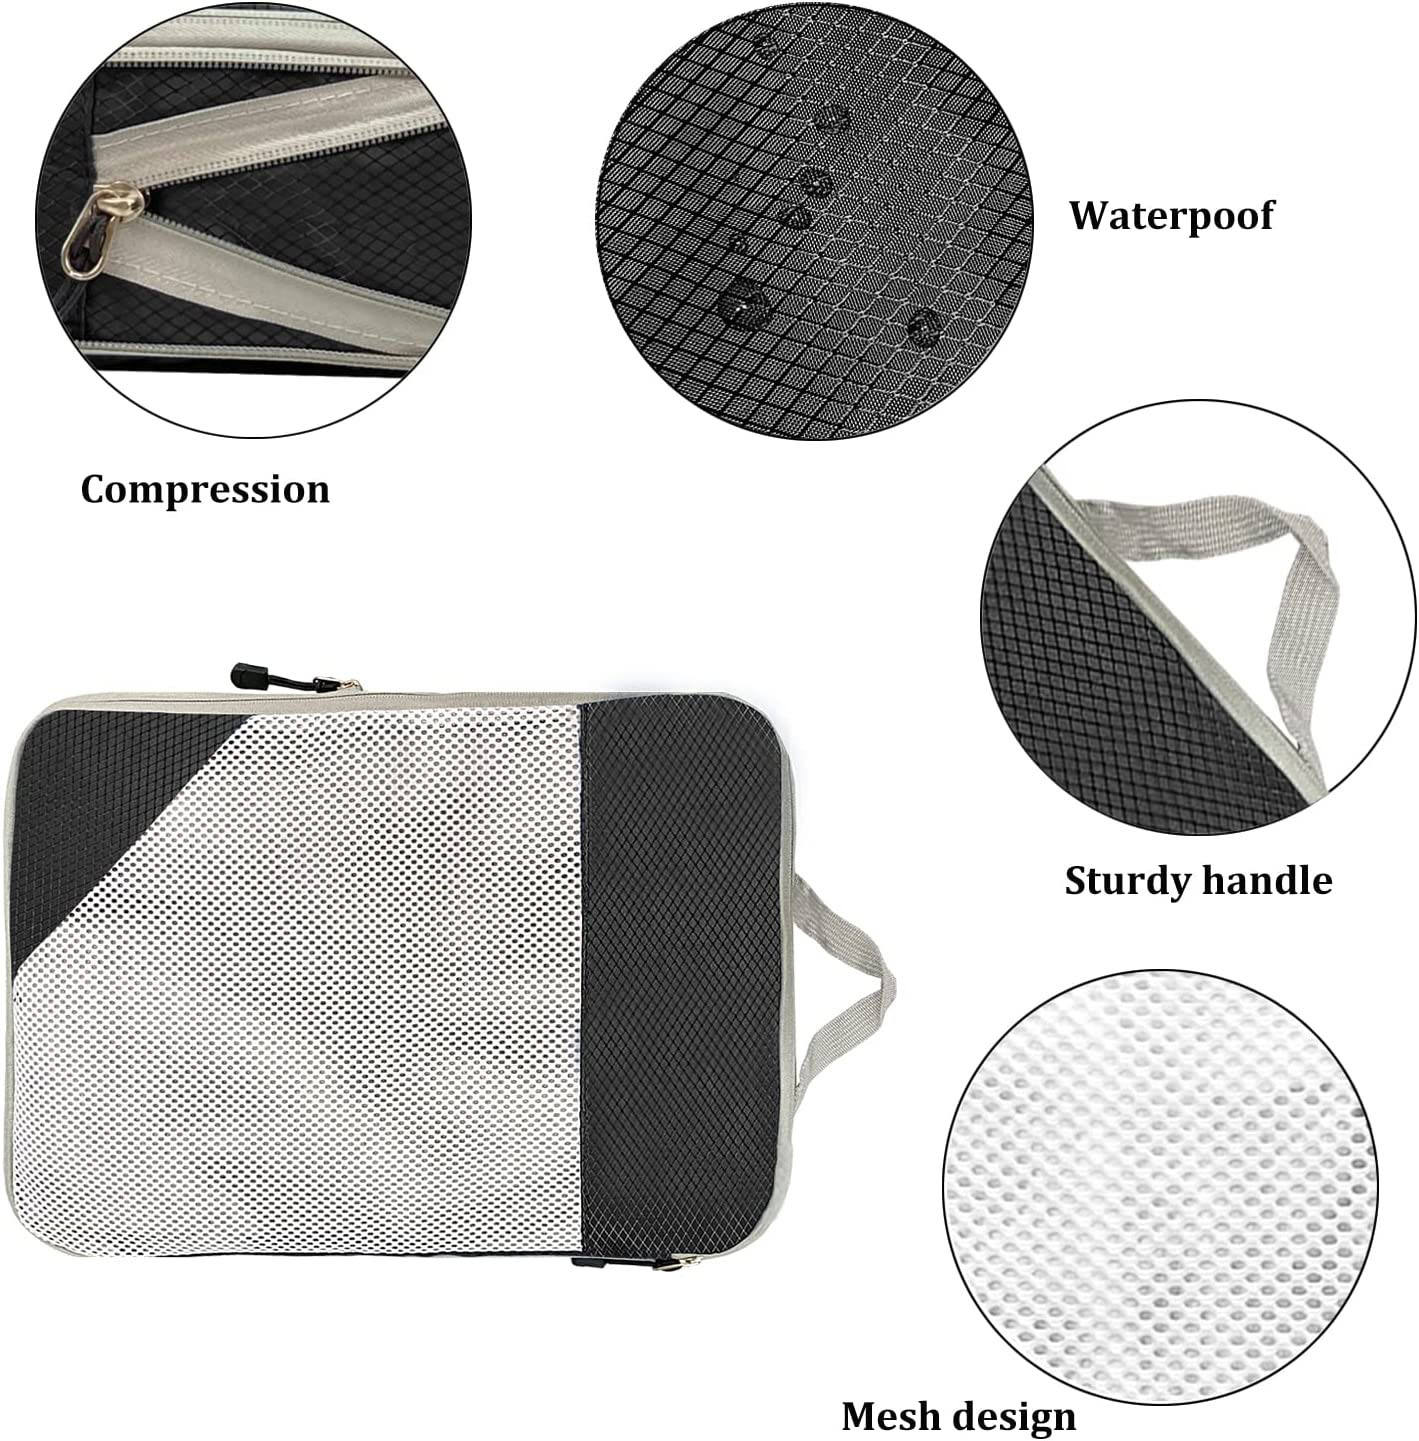 Multifunktionales schwarzes 4-teiliges Kompressions-Kleider-Organizer-Taschenset Reisewürfel Packwürfel für Gepäck